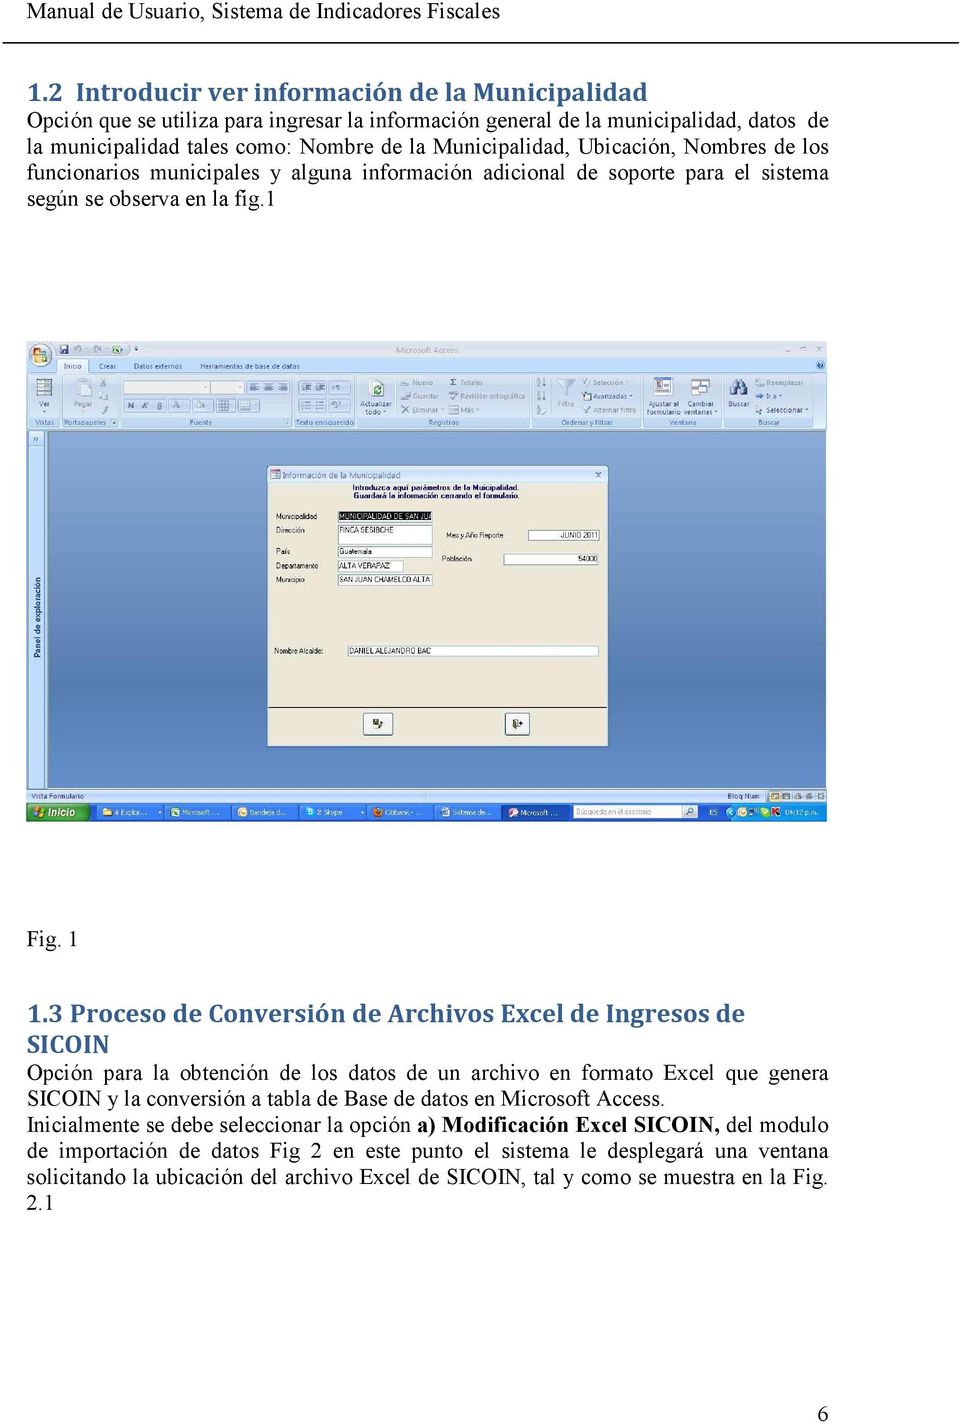 3 Proceso de Conversión de Archivos Excel de Ingresos de SICOIN Opción para la obtención de los datos de un archivo en formato Excel que genera SICOIN y la conversión a tabla de Base de datos en